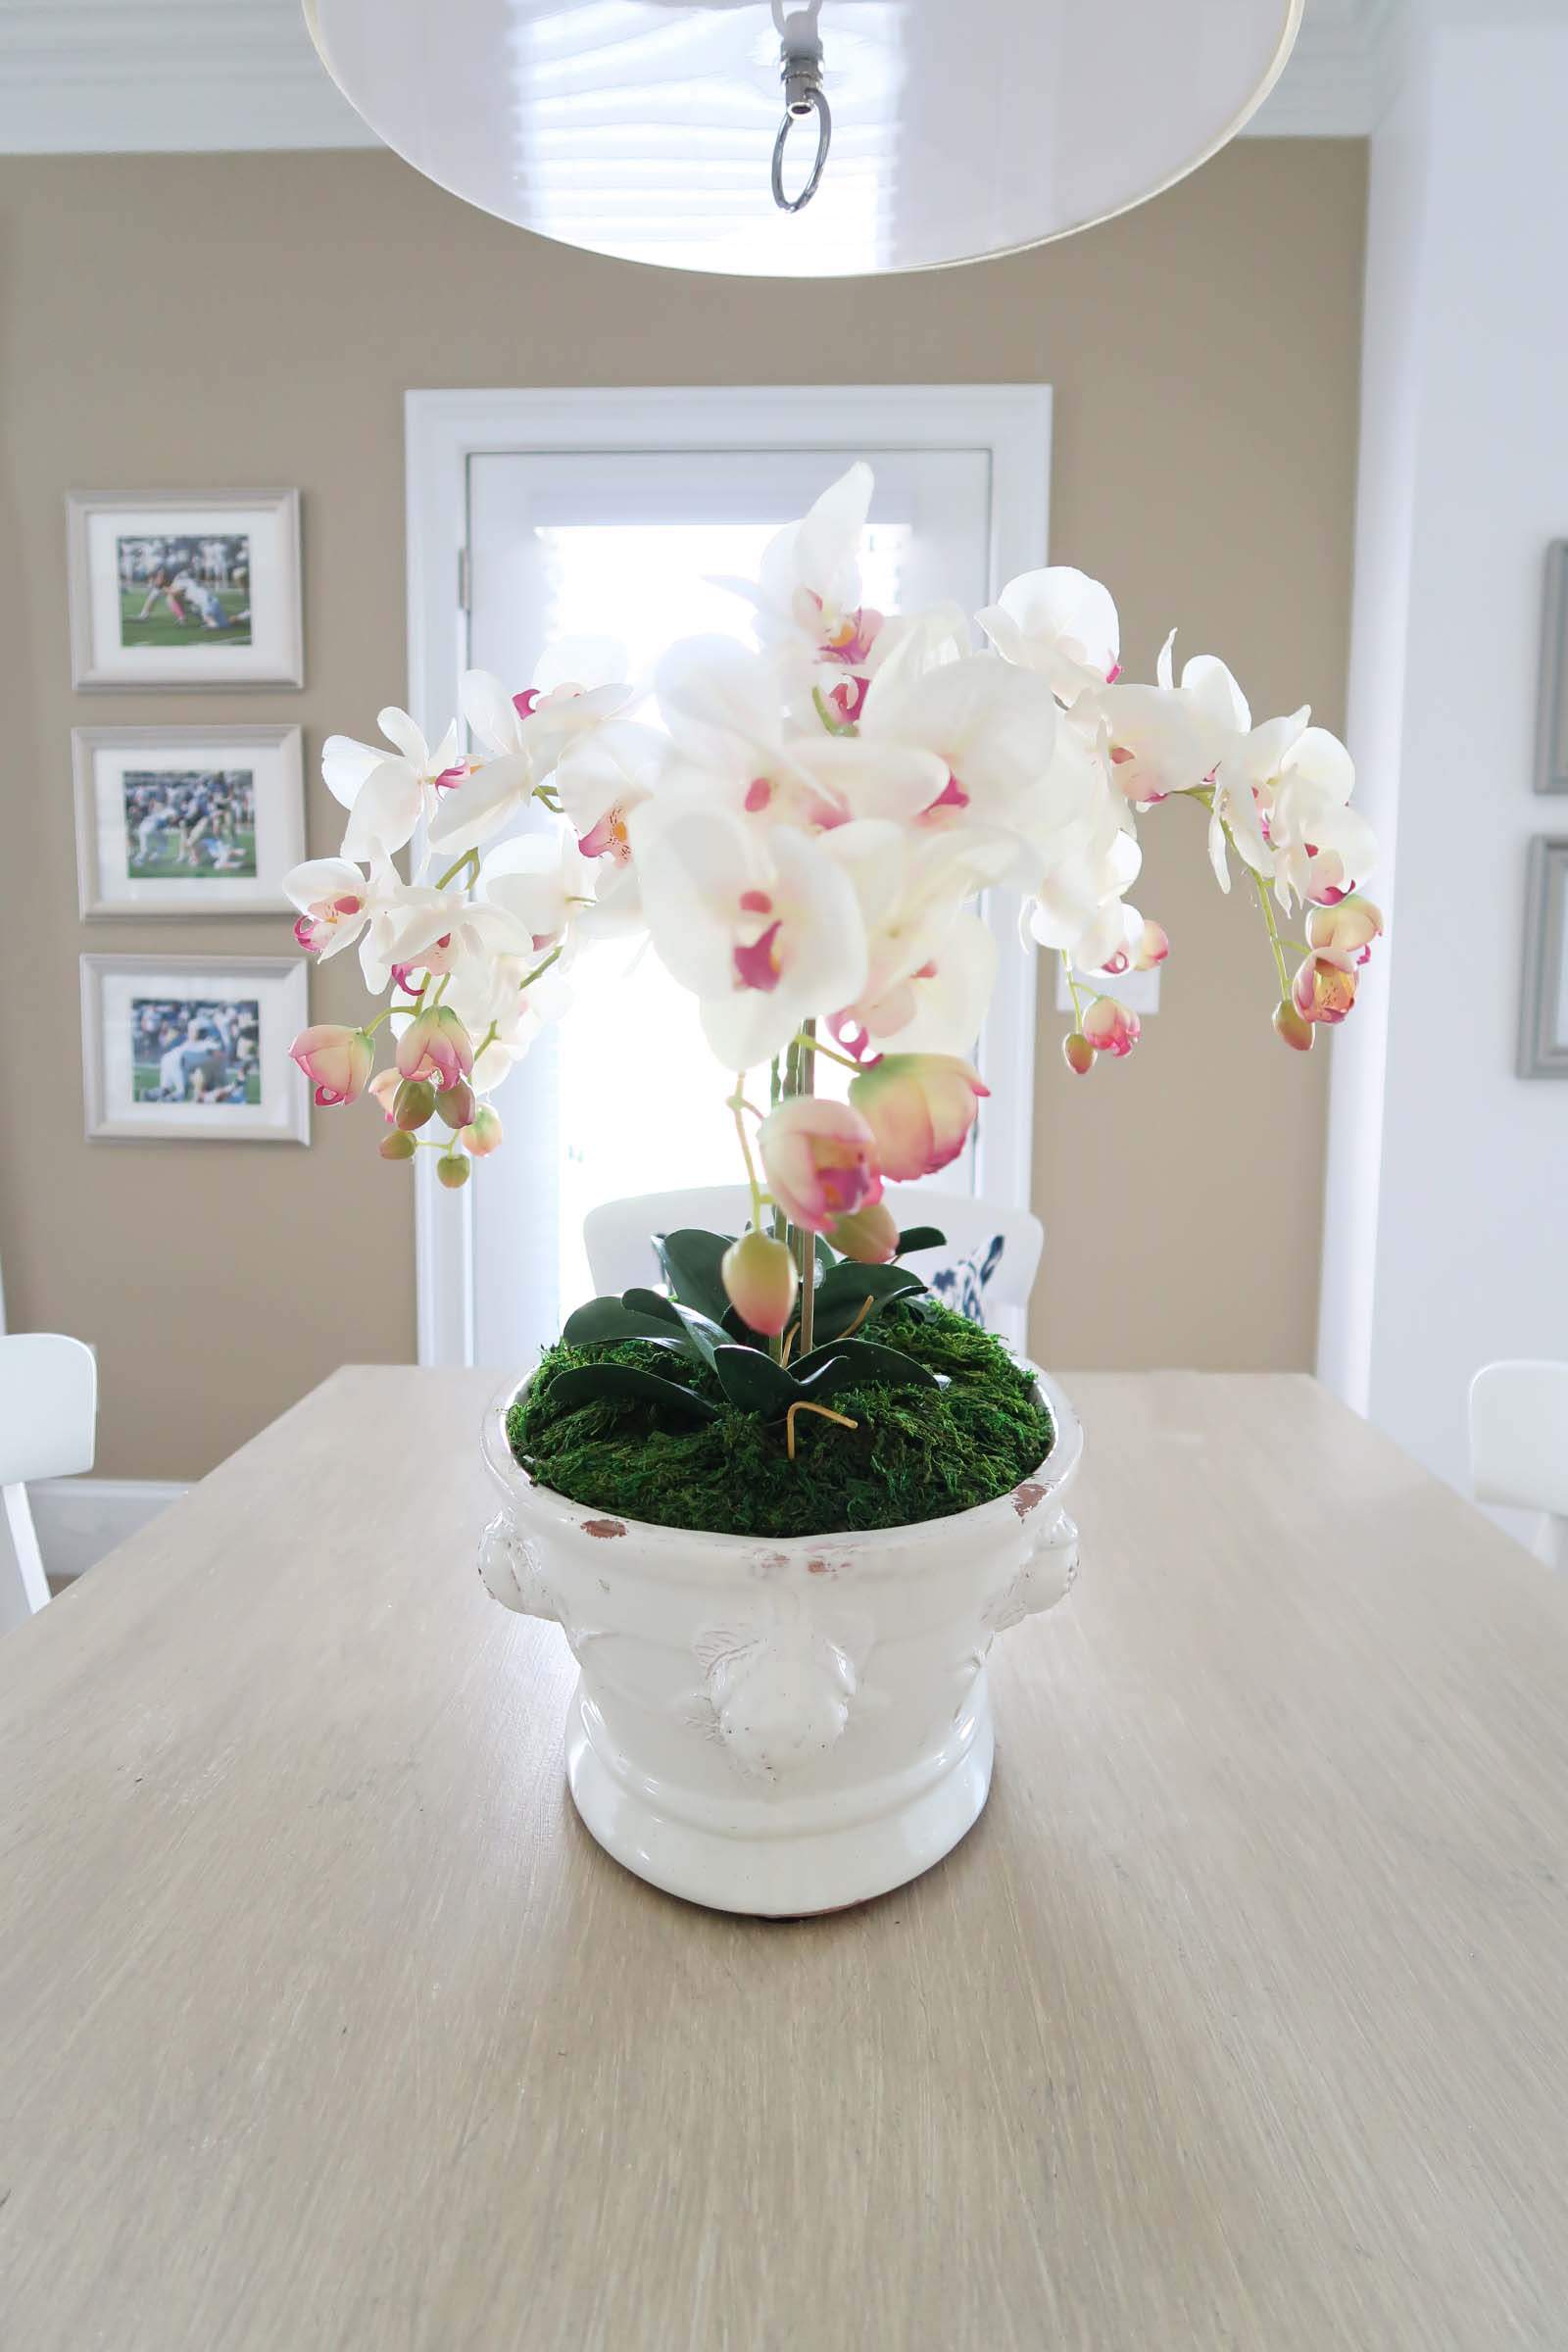 Orchid arrangement complete